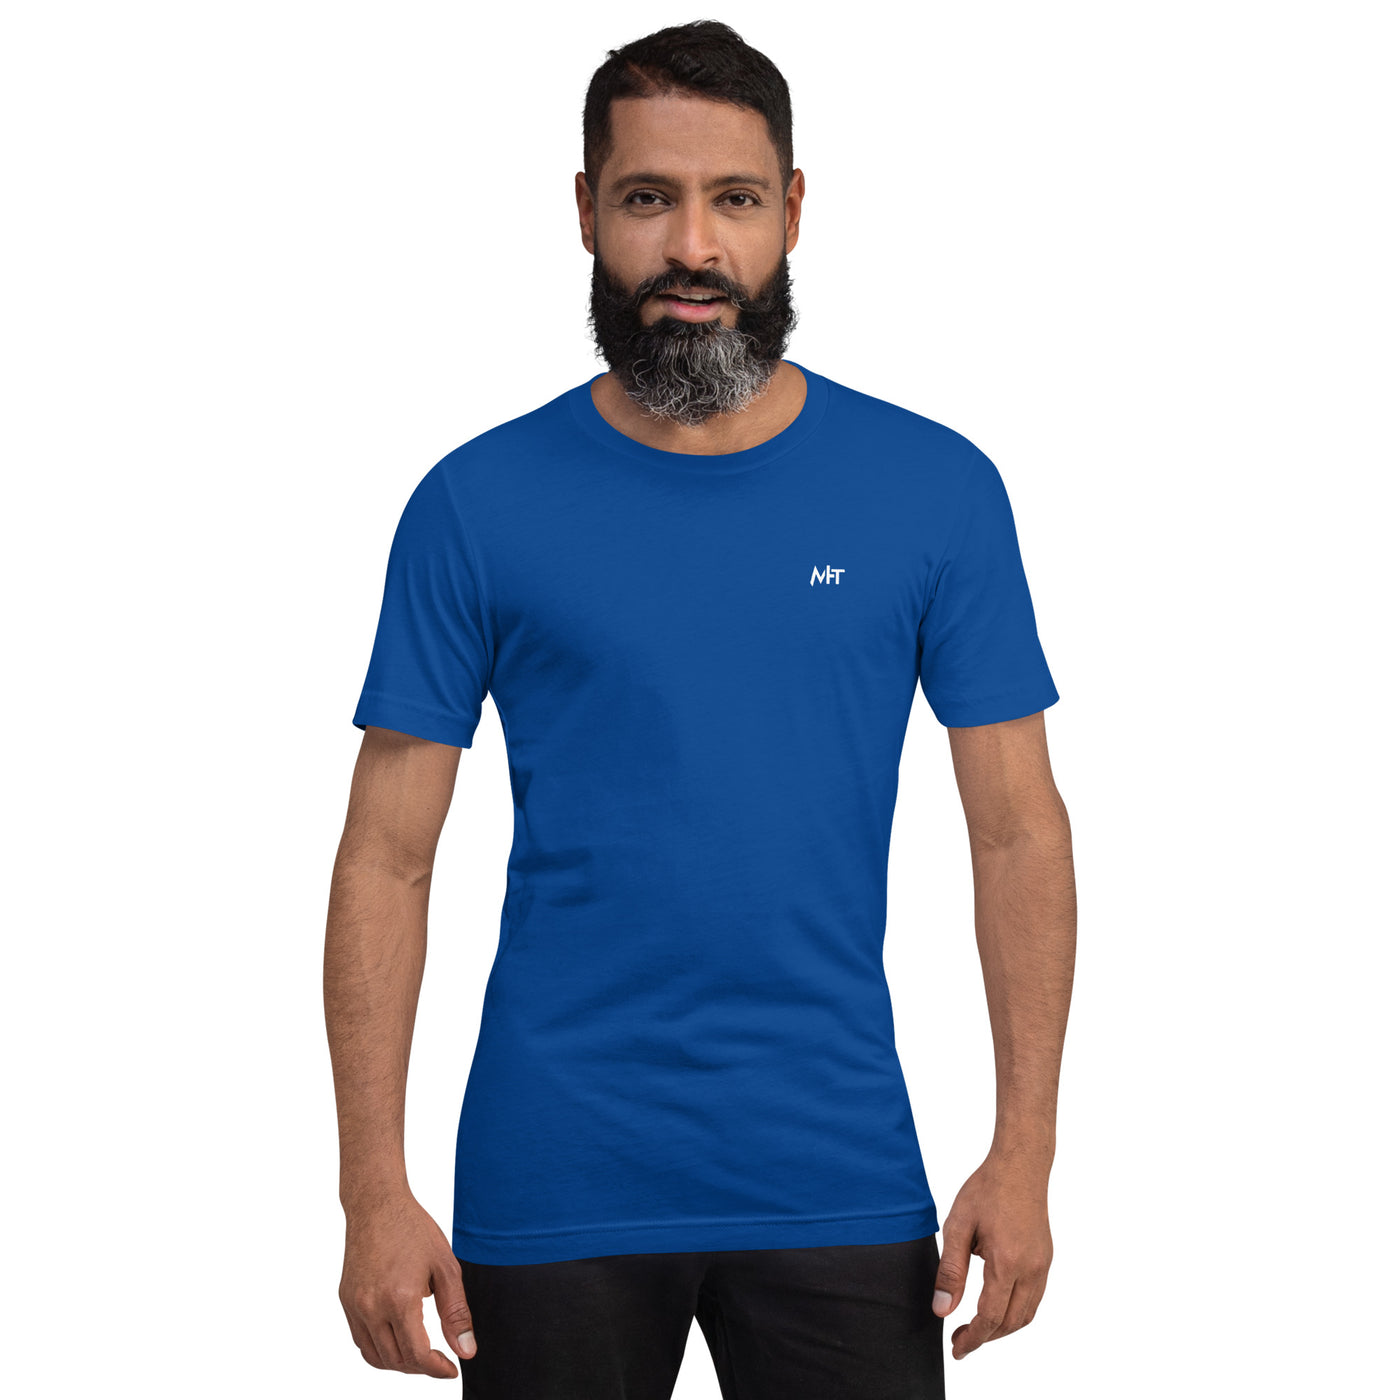 BITCOIN CLUB V4 - Unisex t-shirt ( Back Print )